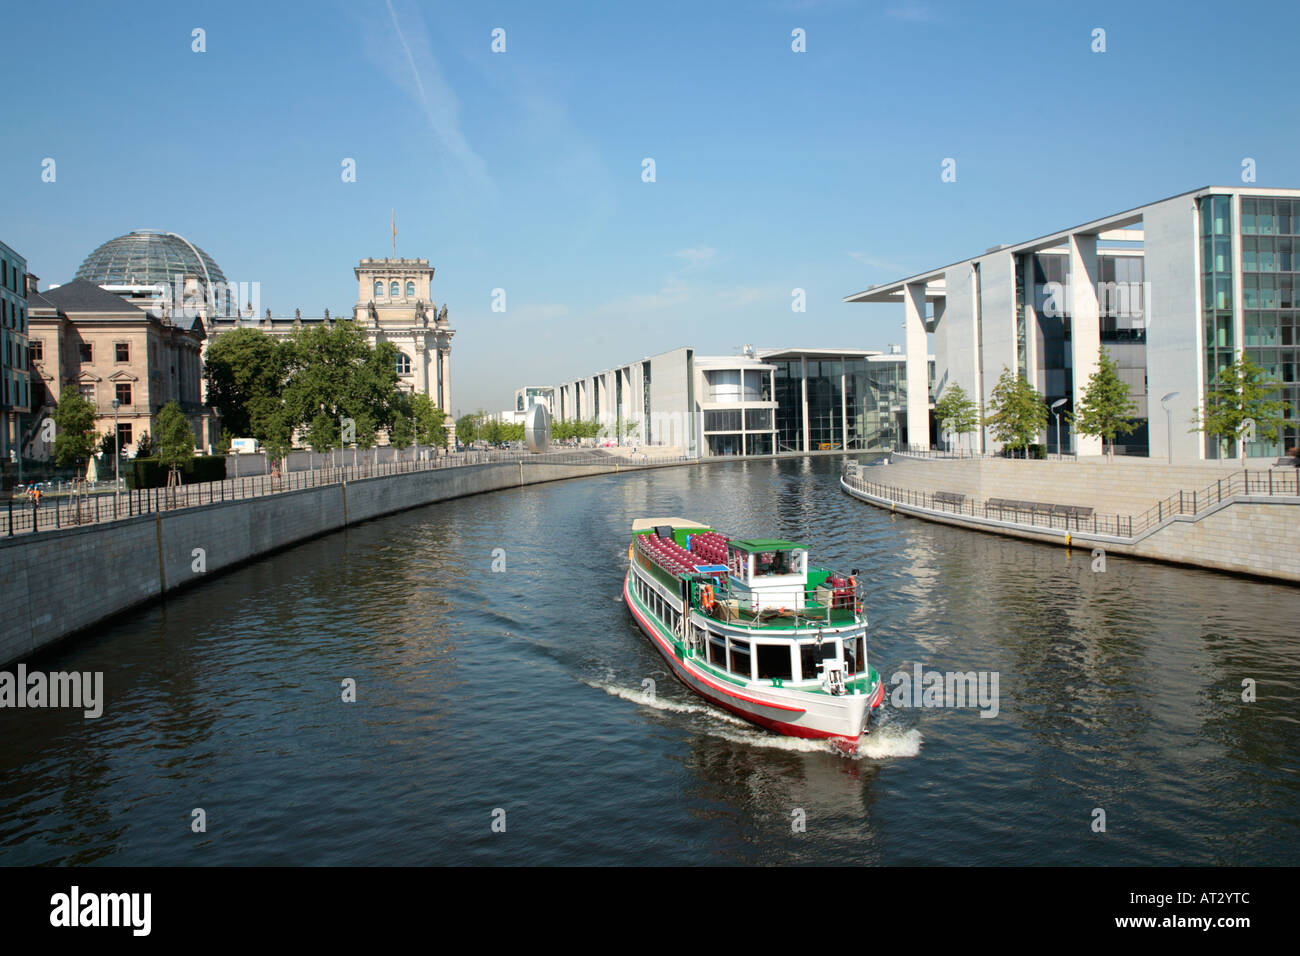 Nave passeggeri sul fiume Spree di fronte al Reichstag nella capitale tedesca Berlino Foto Stock